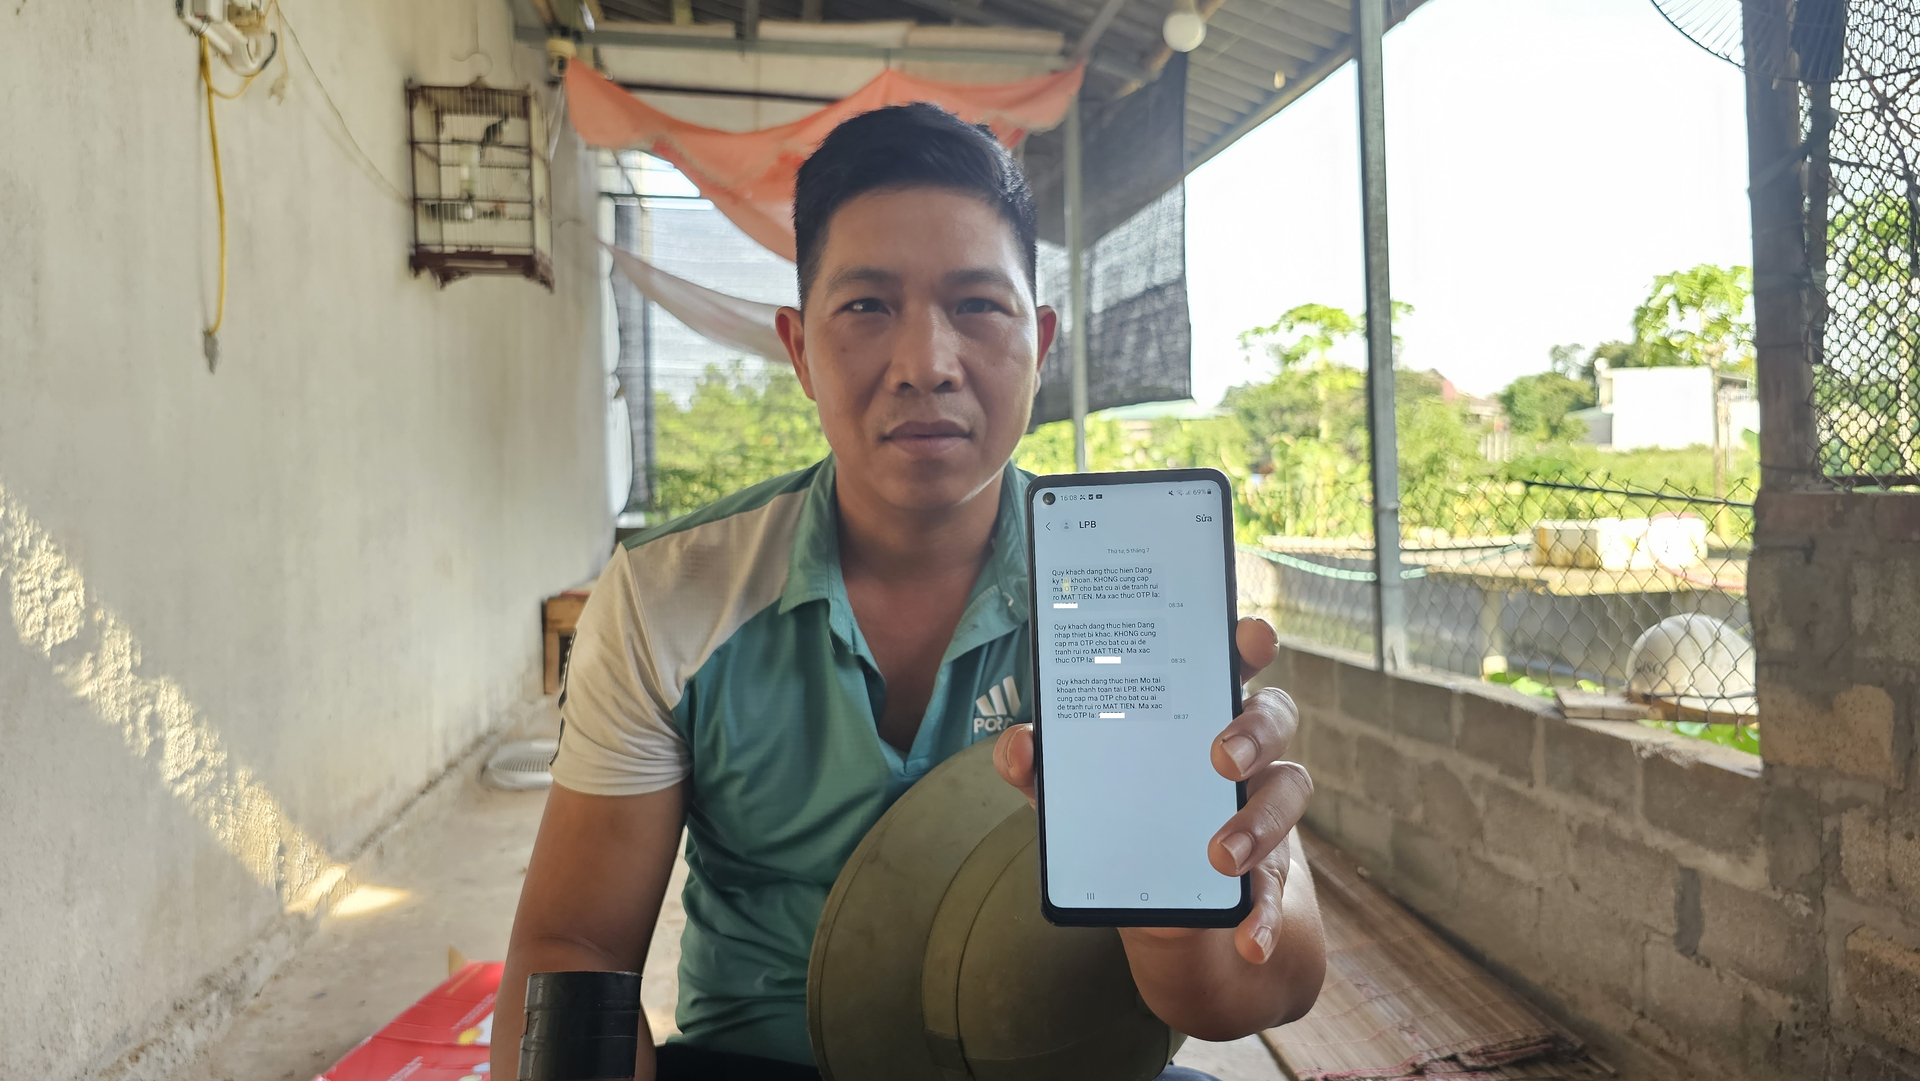 Người dân xã Phú Nhuận (huyện Bảo Thắng, Lào Cai) phát hiện tin nhắn bị xóa lưu trong thùng rác của điện thoại di động liên quan việc mở tài khoản ngân hàng LPBank. Ảnh: Hải Đăng.